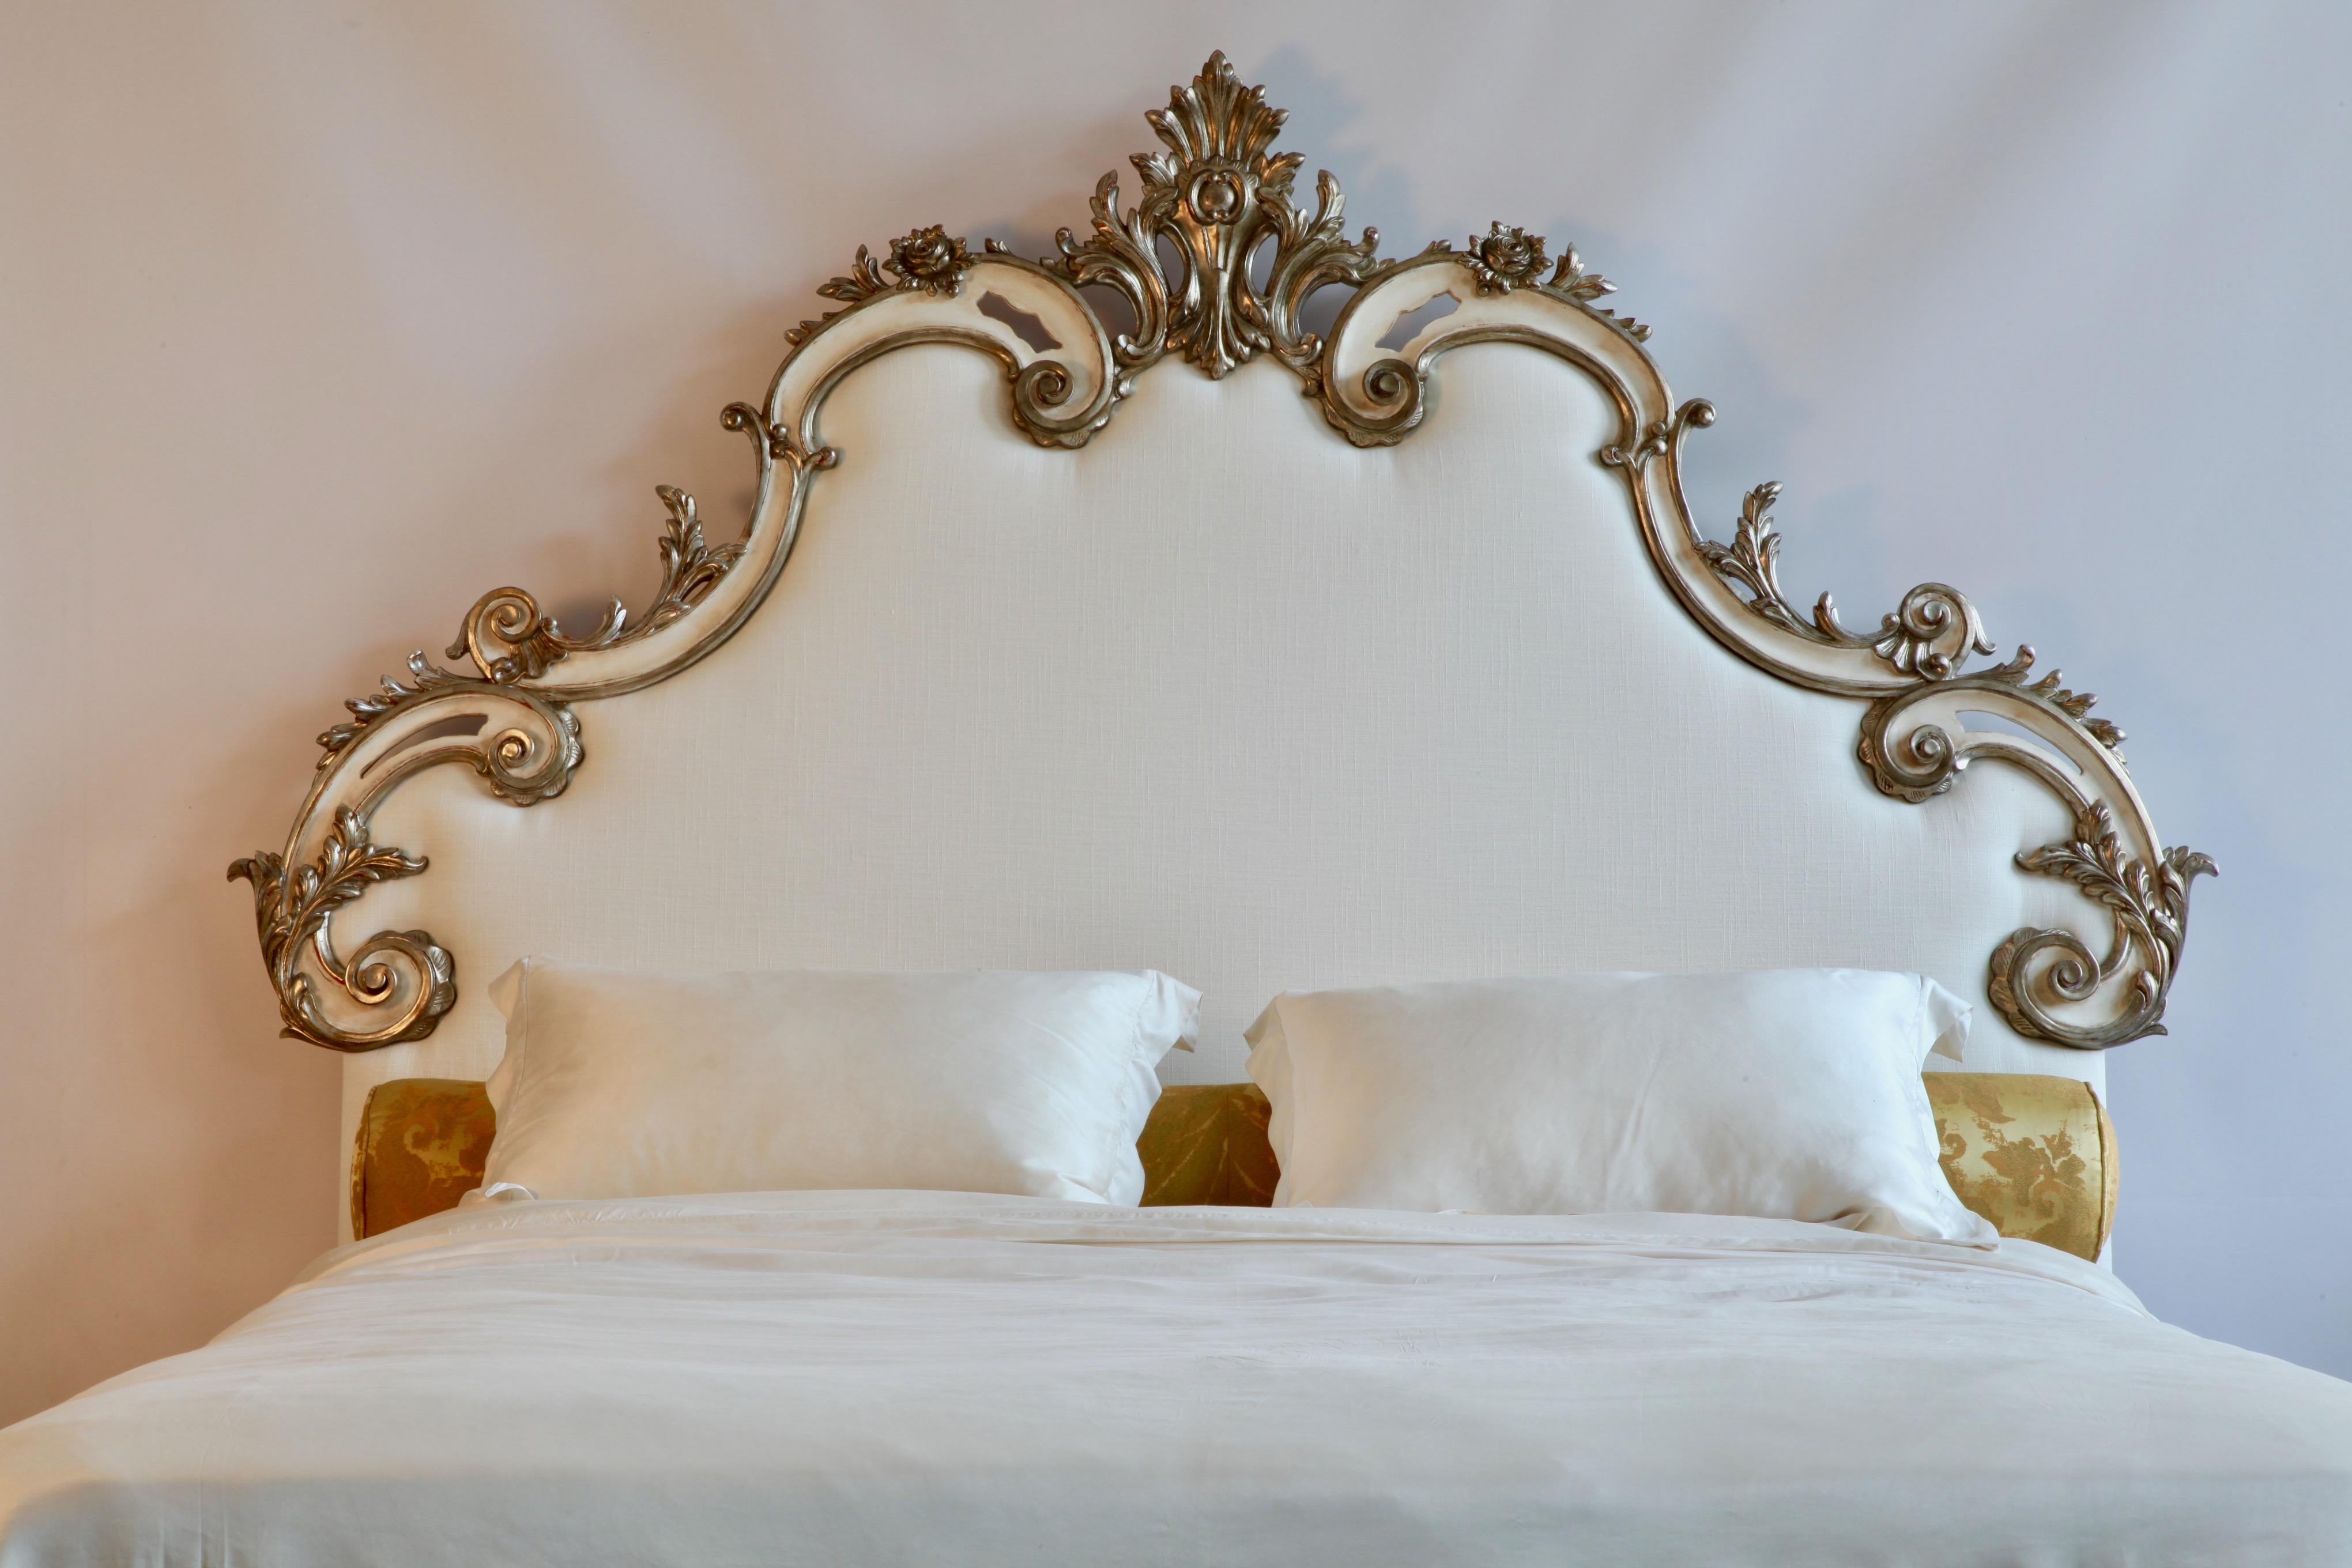 Tête de lit rococo sculptée à la main, patinée à l'ancienne, taupe et blanche, rehaussée de reflets argentés dorés à la main. La sculpture consiste en de larges et profondes courbes en 